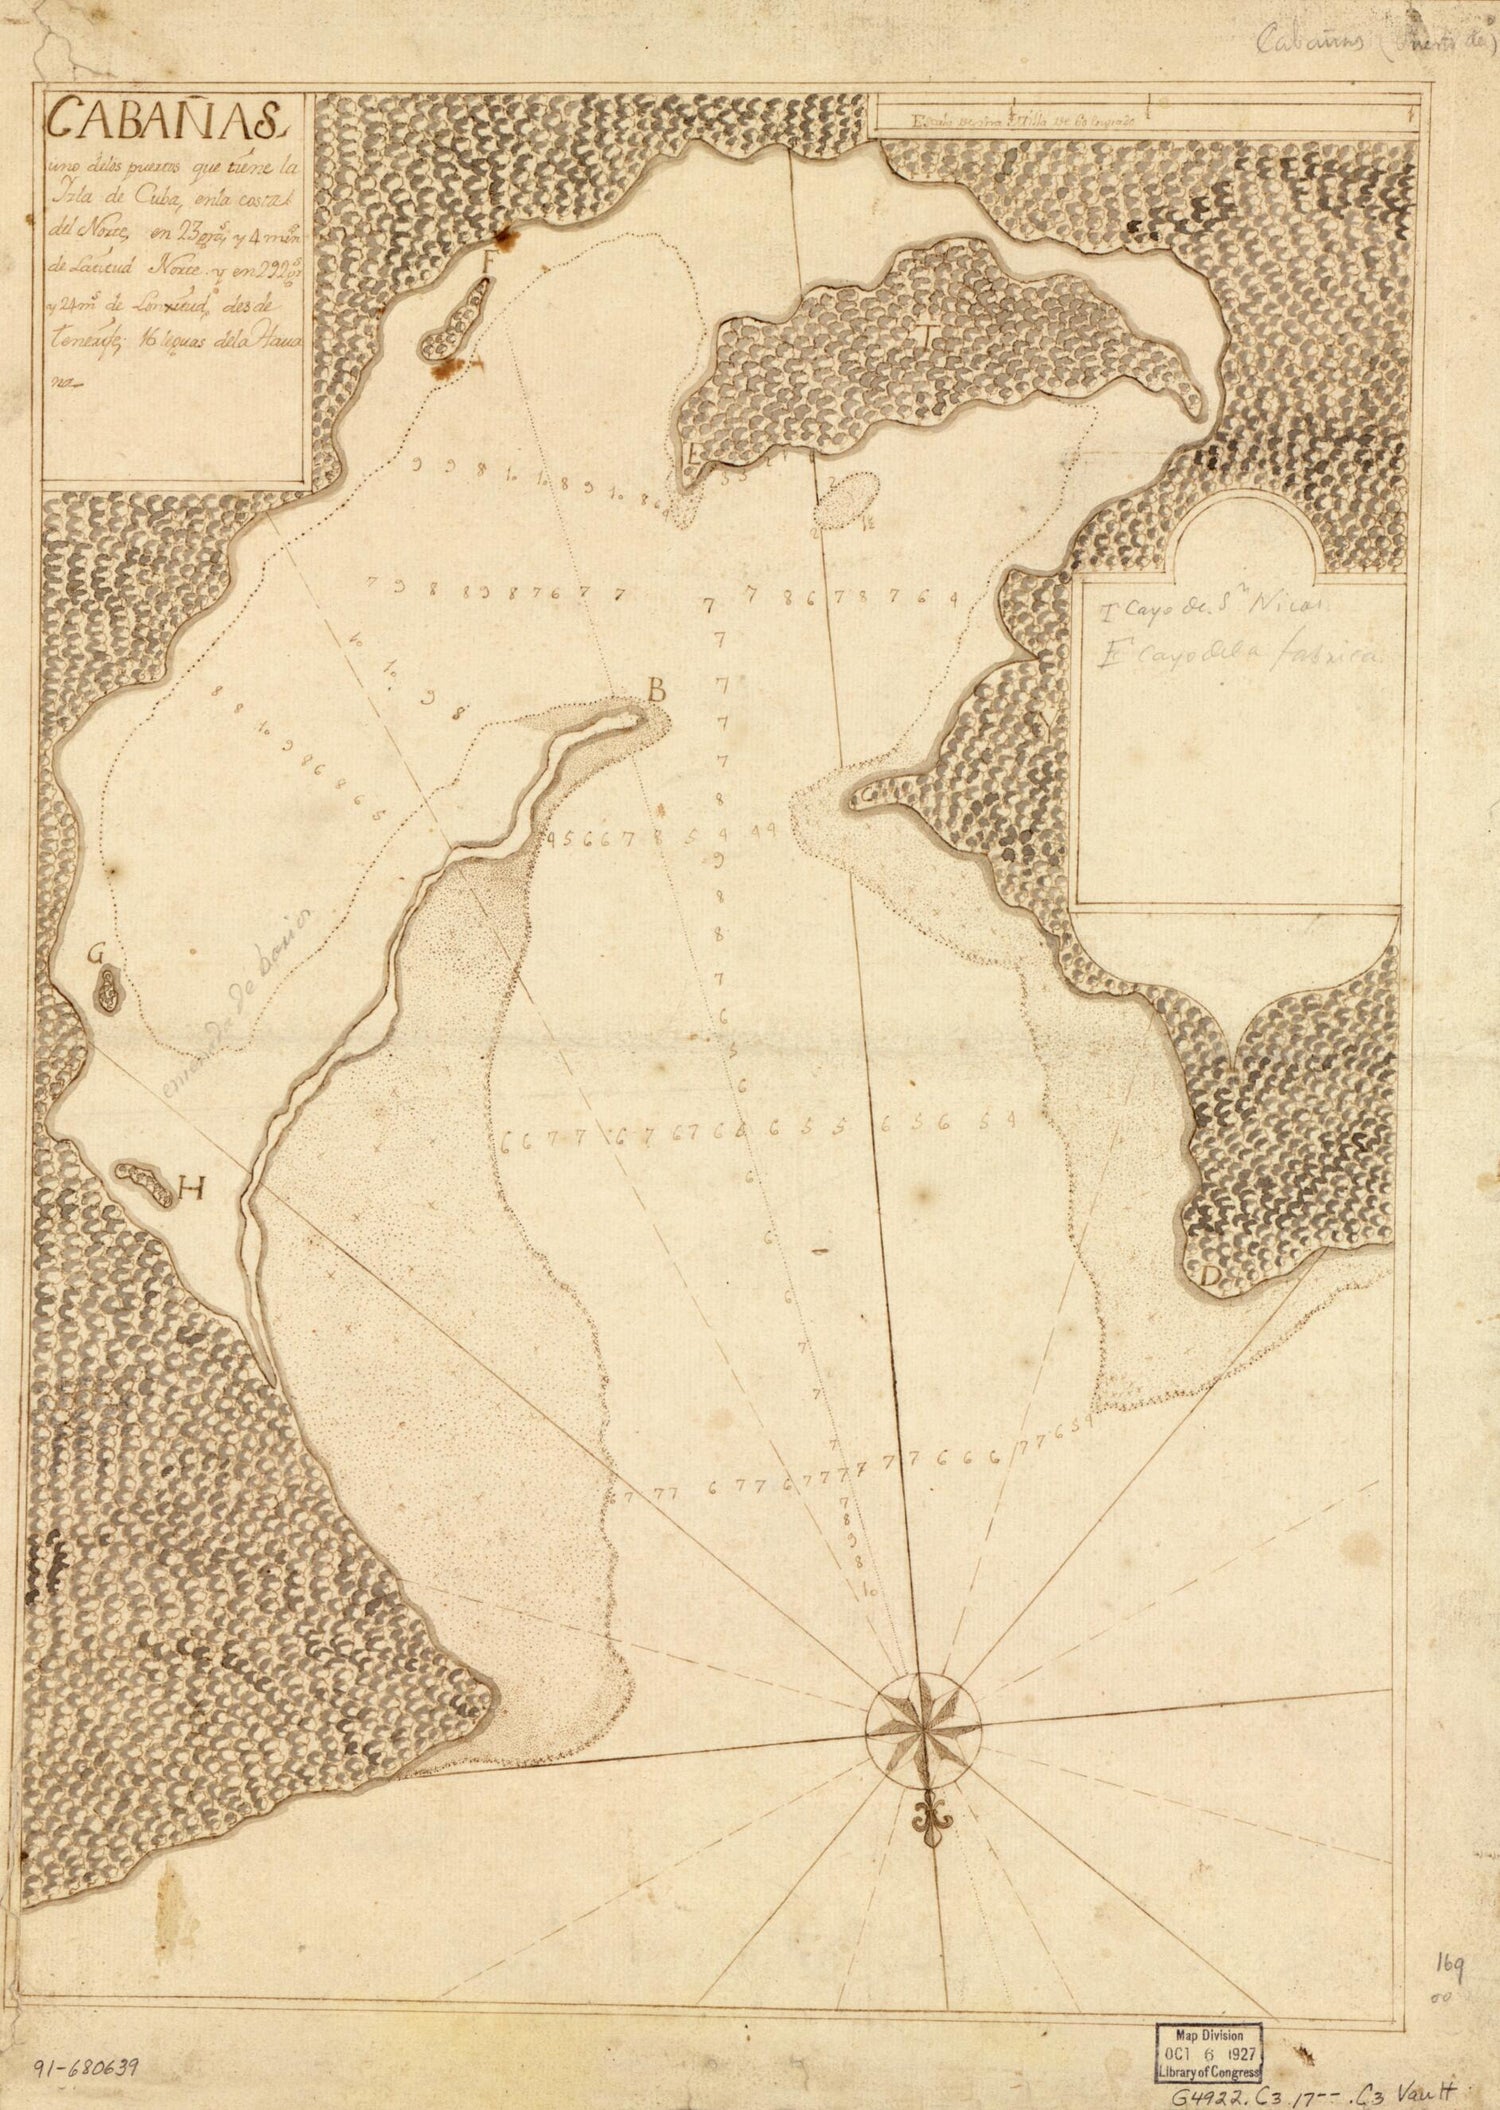 This old map of Cabañas, Uno De Los Puertos Que Tiene La Yzla De Cuba, En La Costa Del Norte En 23 Gras. Y 4 Mins. De Latitud Norte Y En 292 Grs. Y 24 Ms. De Longitud Desde Tenerife, 16 Leguas De La Havana from 1700 was created by  in 1700